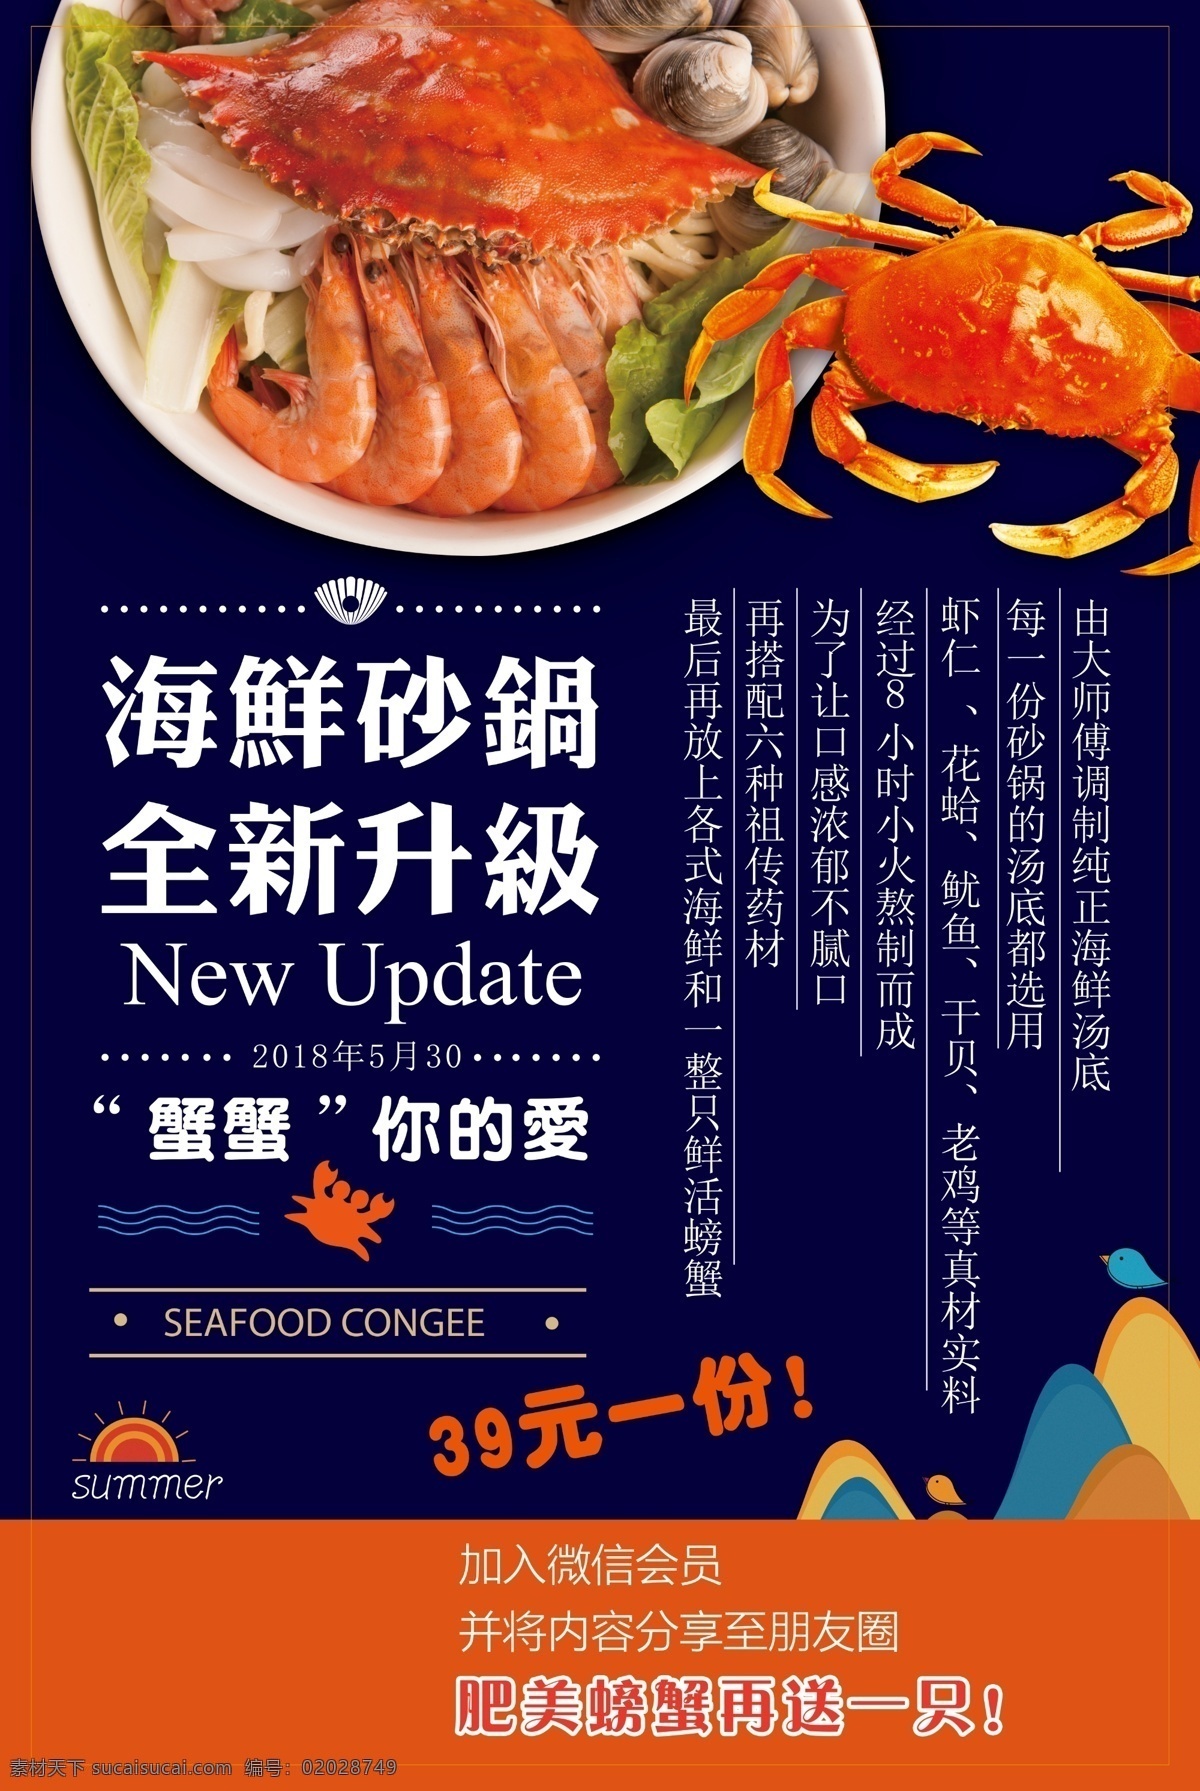 海鲜 砂锅 美食 活动 宣传海报 海鲜砂锅 宣传 海报 餐饮美食 类